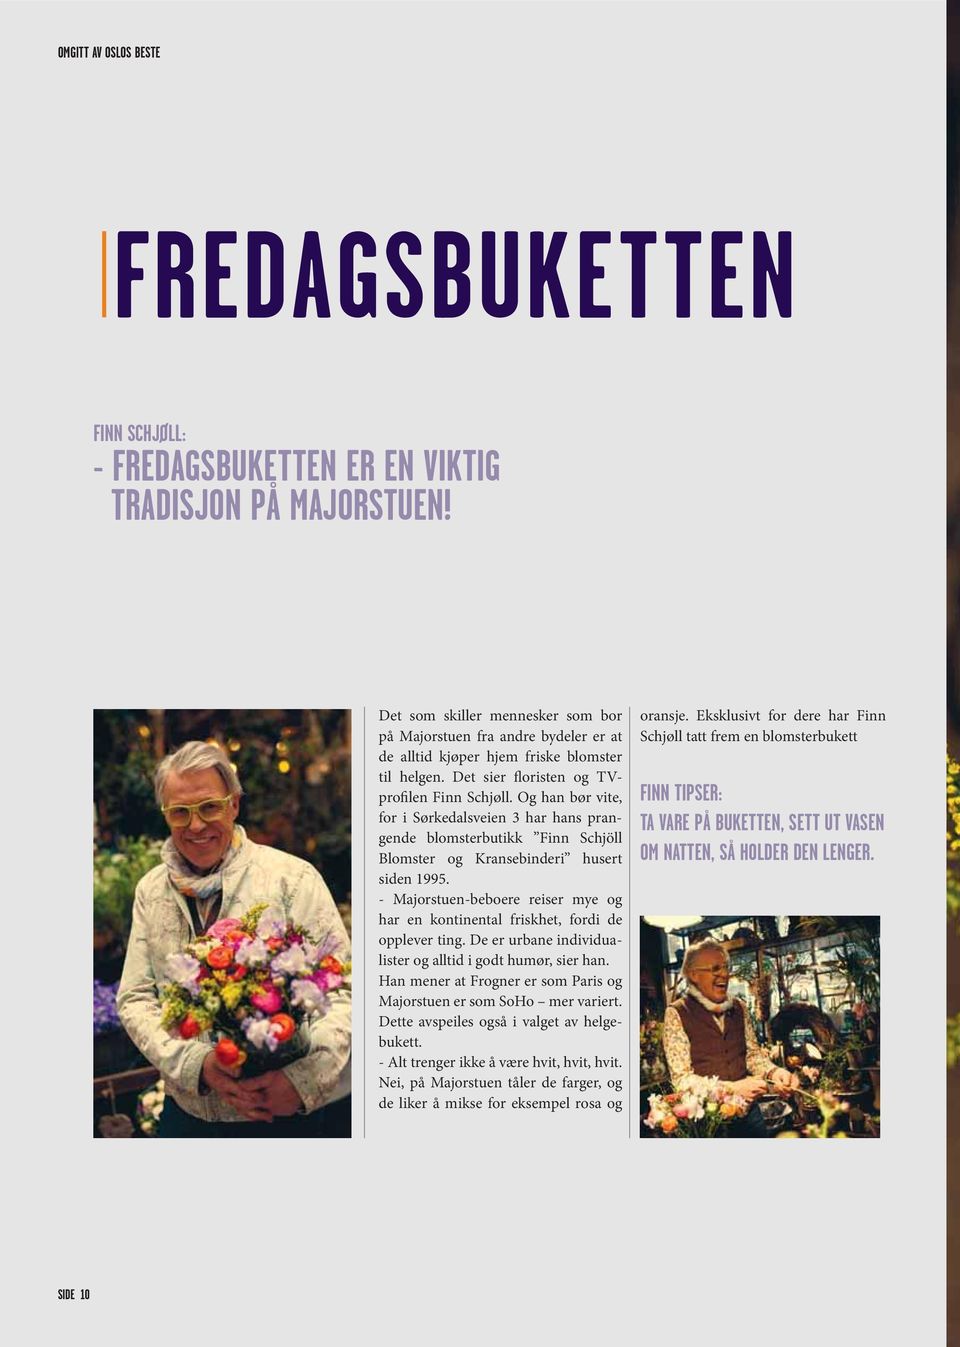 Og han bør vite, for i Sørkedalsveien 3 har hans prangende blomsterbutikk Finn Schjöll Blomster og Kransebinderi husert siden 1995.